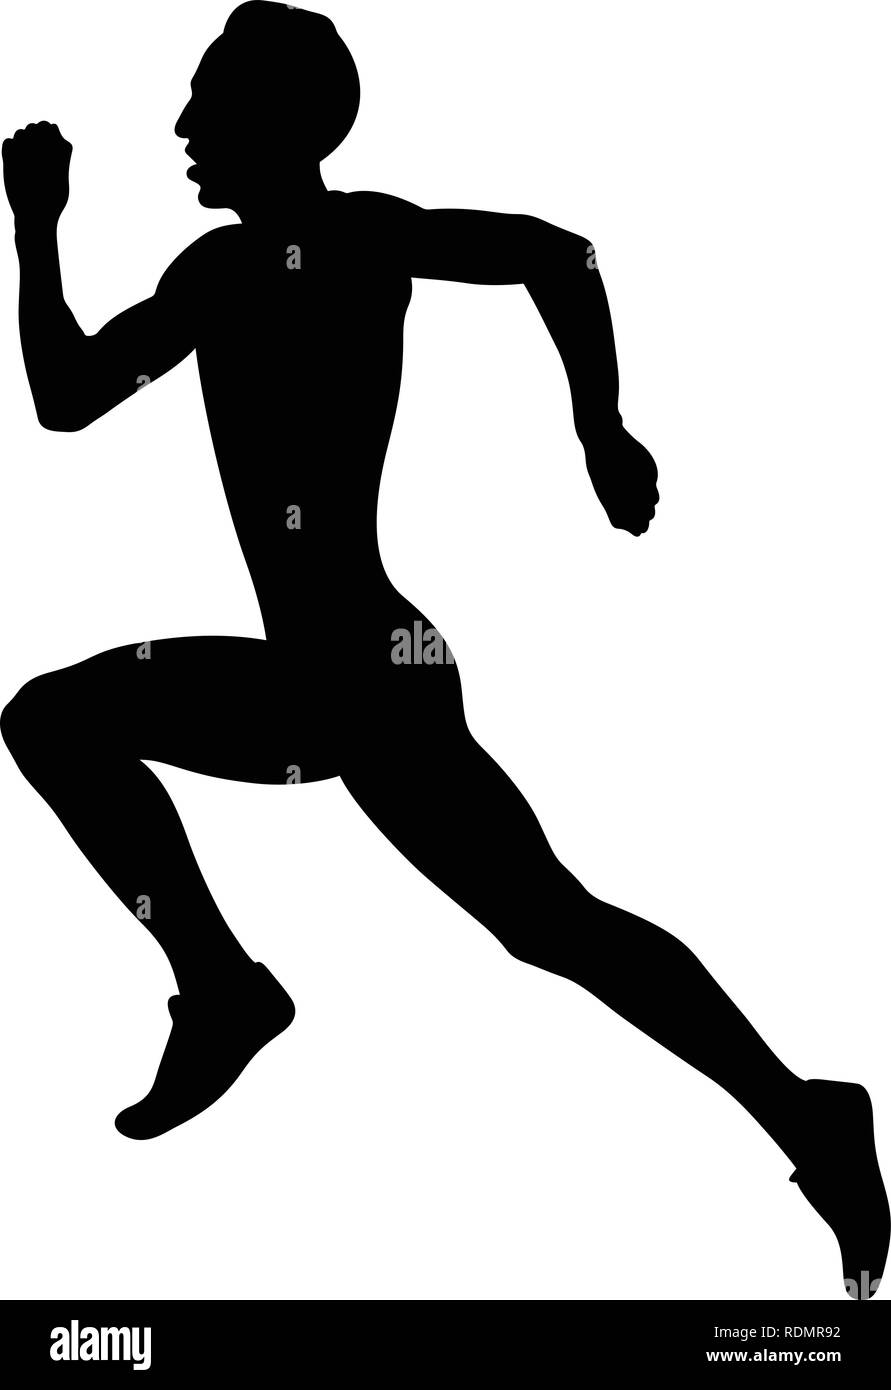 Athlète masculin piste sprint runner silhouette noire Illustration de Vecteur